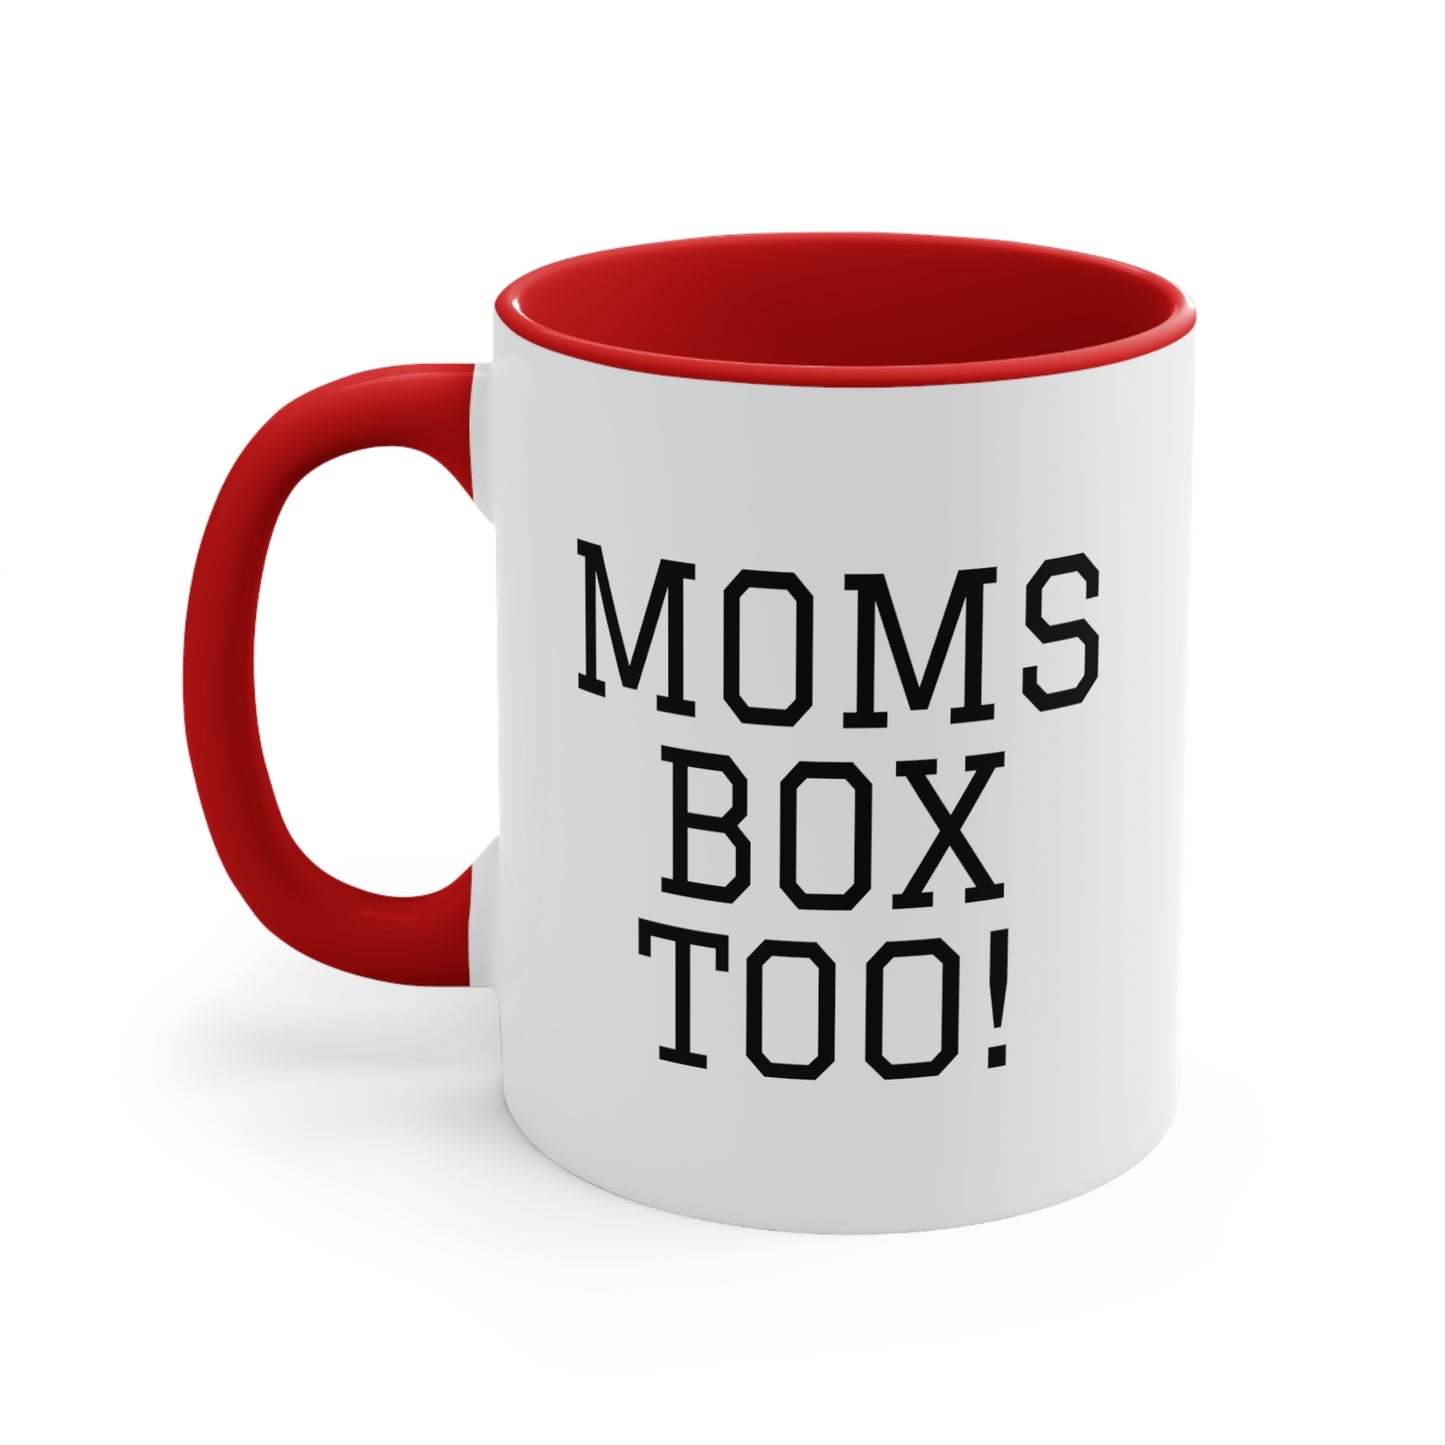 BCB Coffee Mug - "Moms Box Too!"